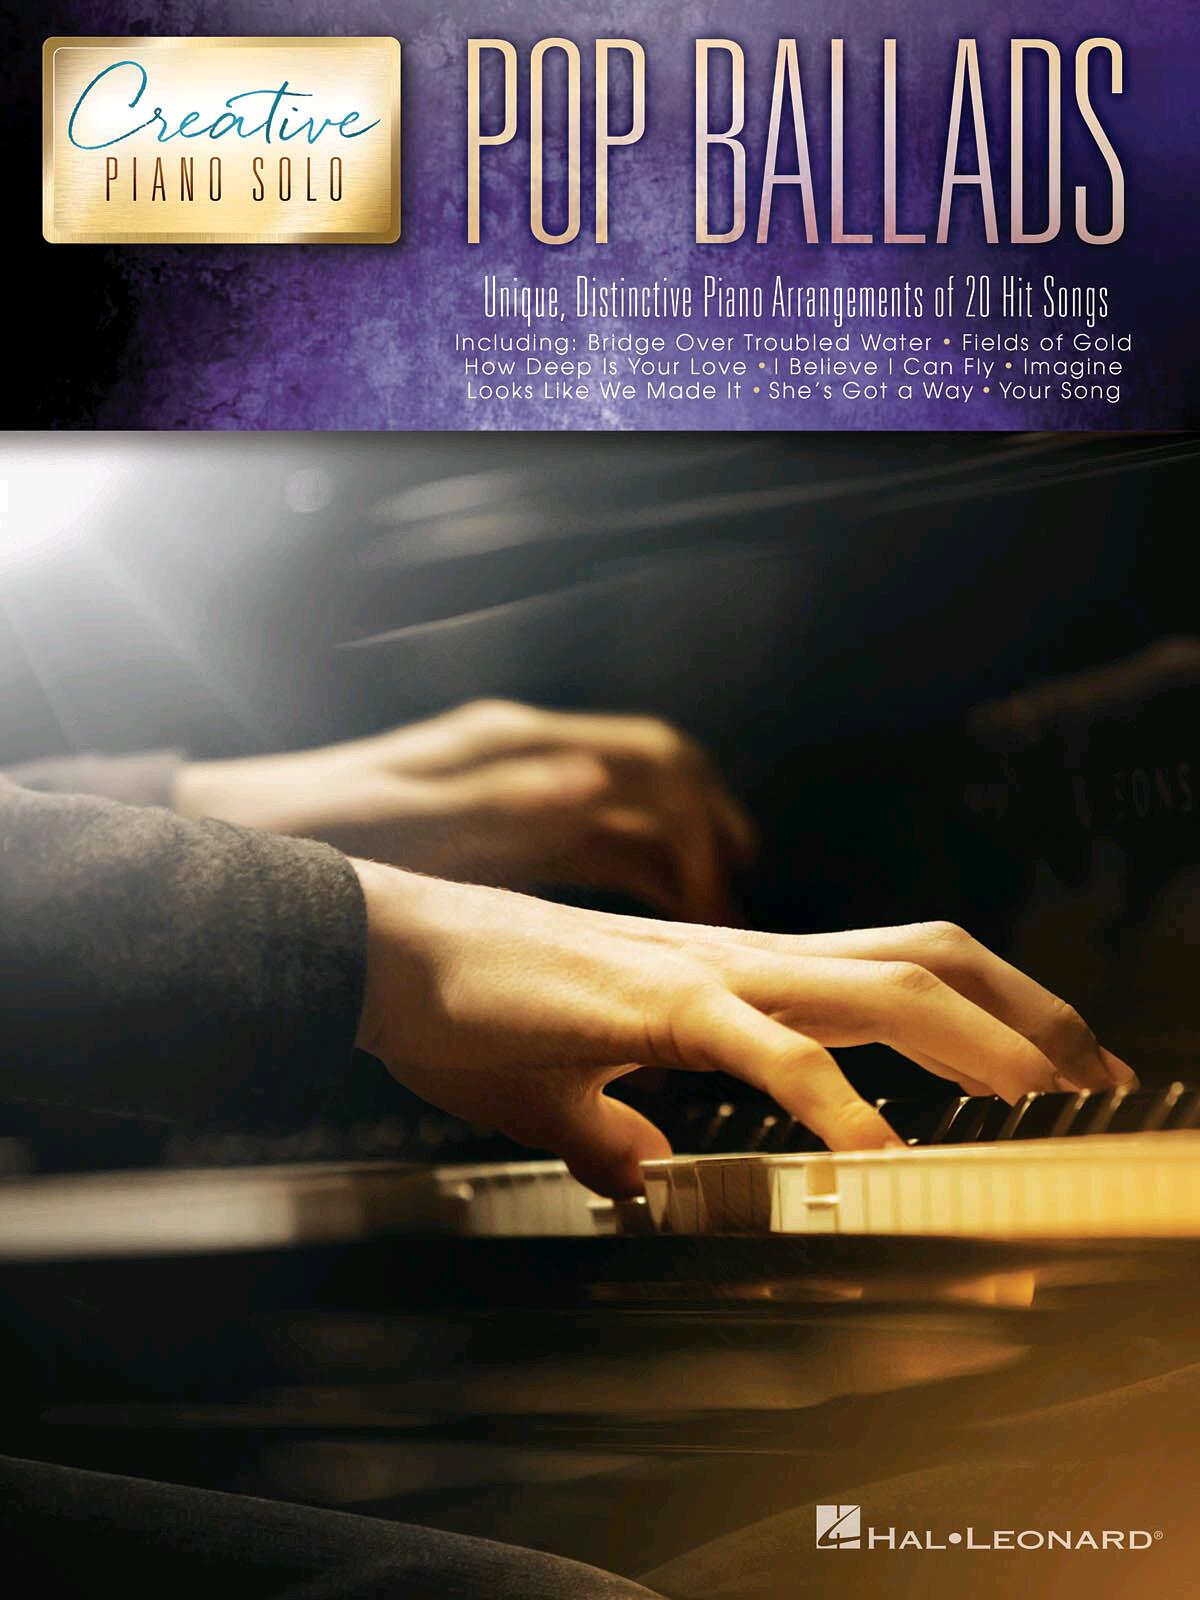 Pop Ballads  Creative Piano Solo : photo 1